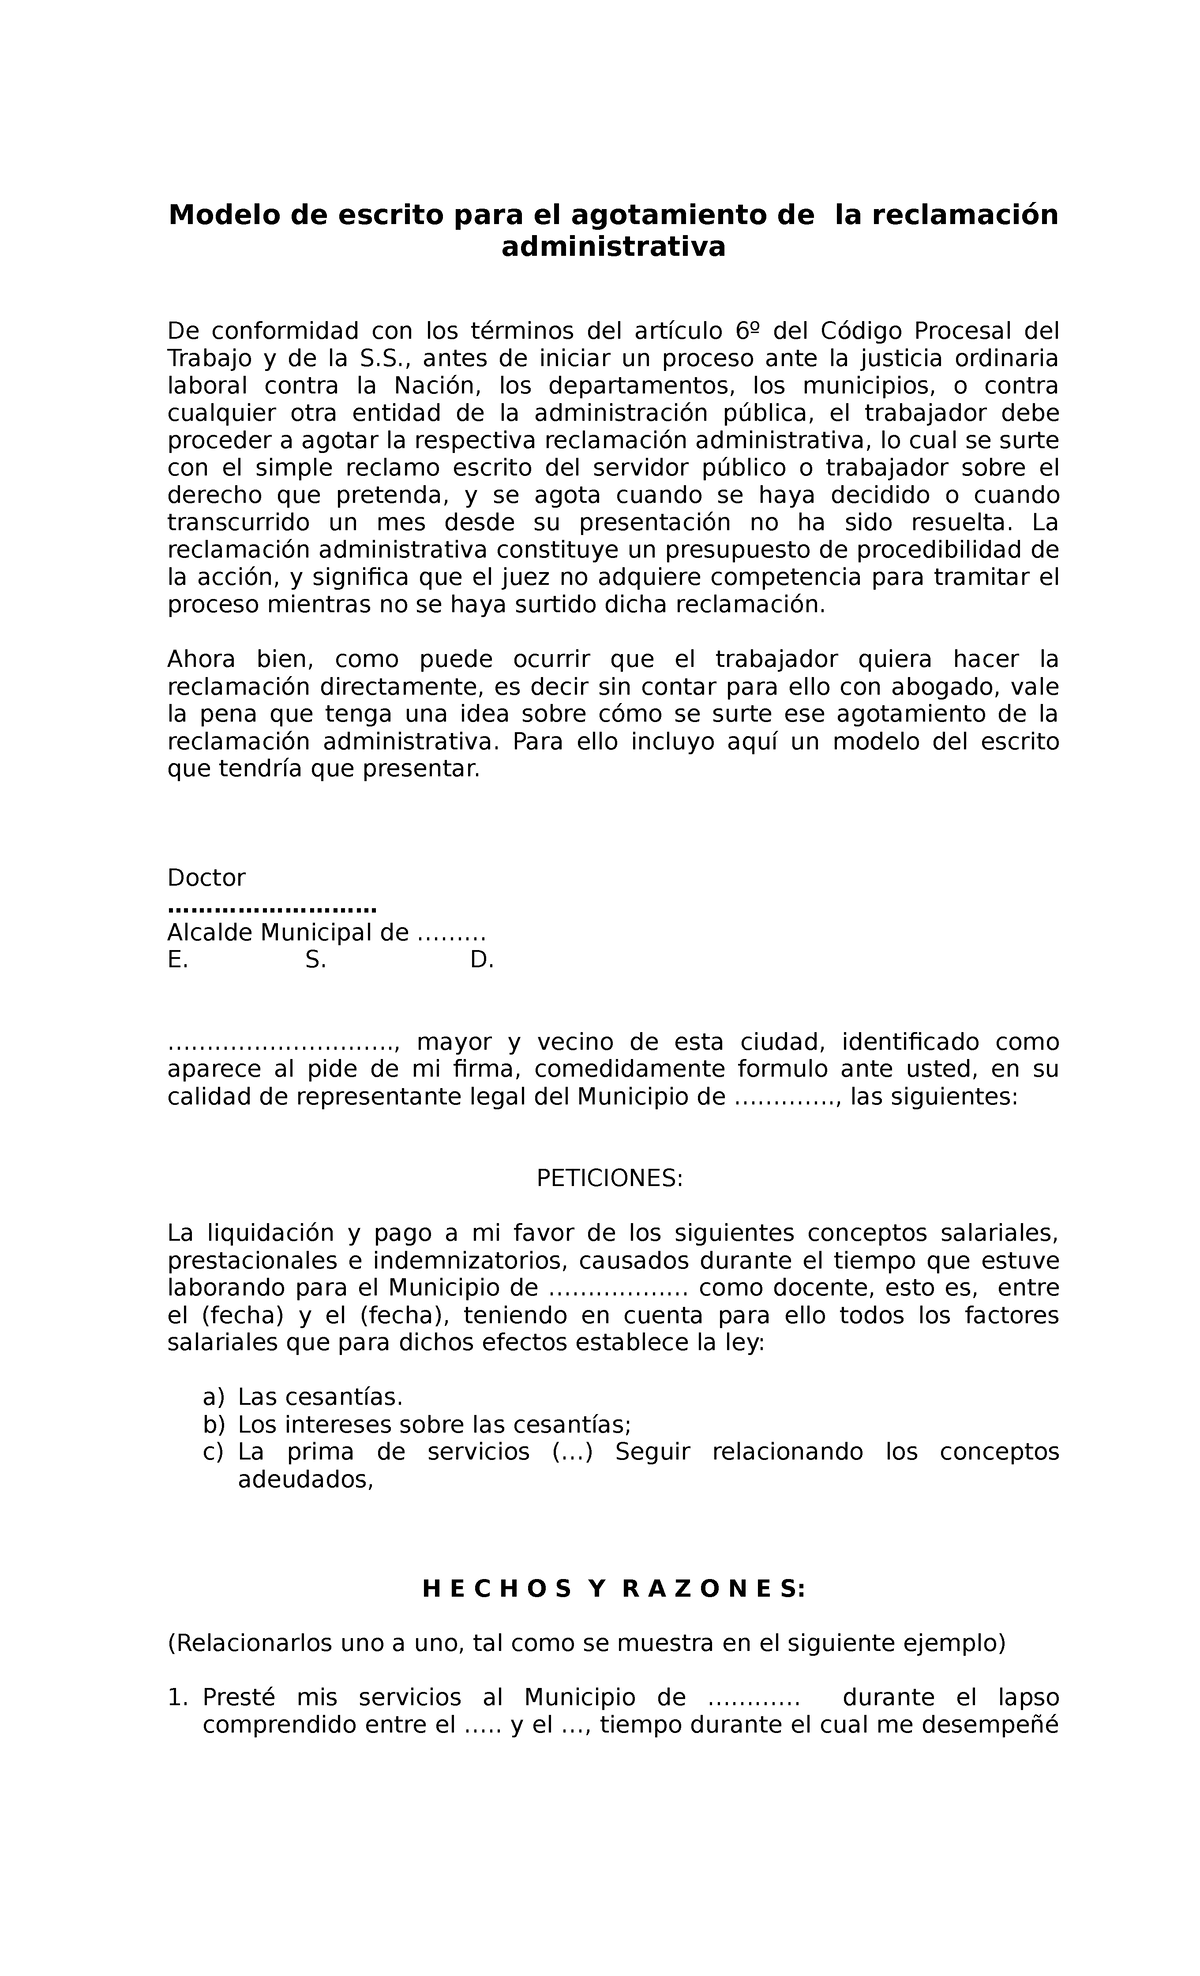 Modelo agotamiento reclamacion administrativa - Modelo de escrito para el  agotamiento de la - Studocu